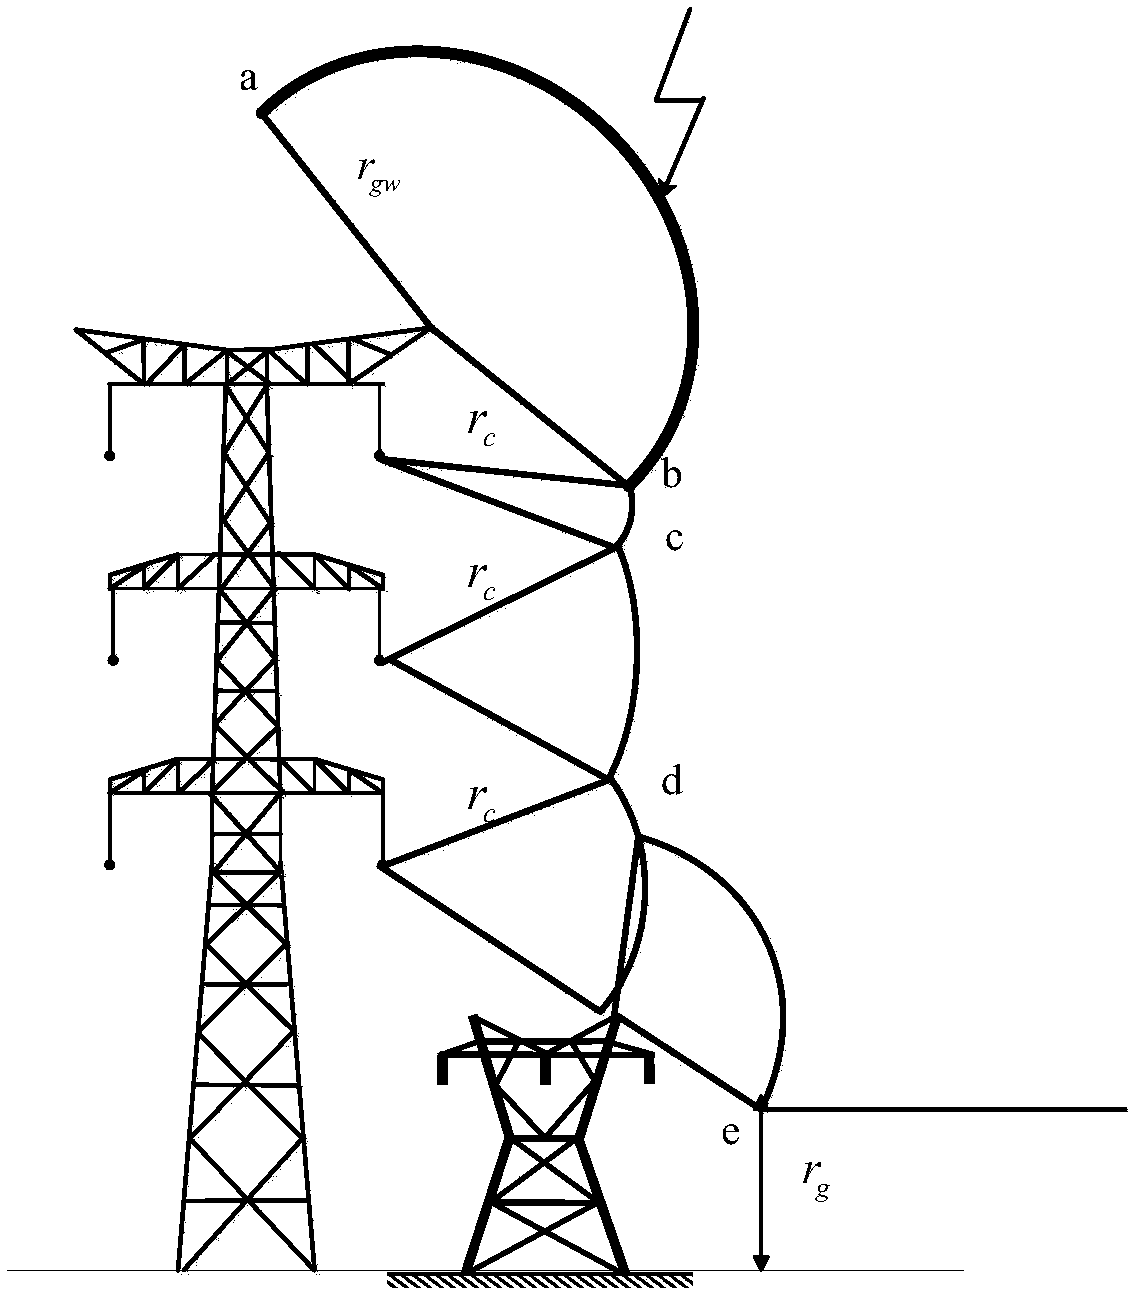 Method for calculating lightning strike shielding effect between adjacent transmission lines